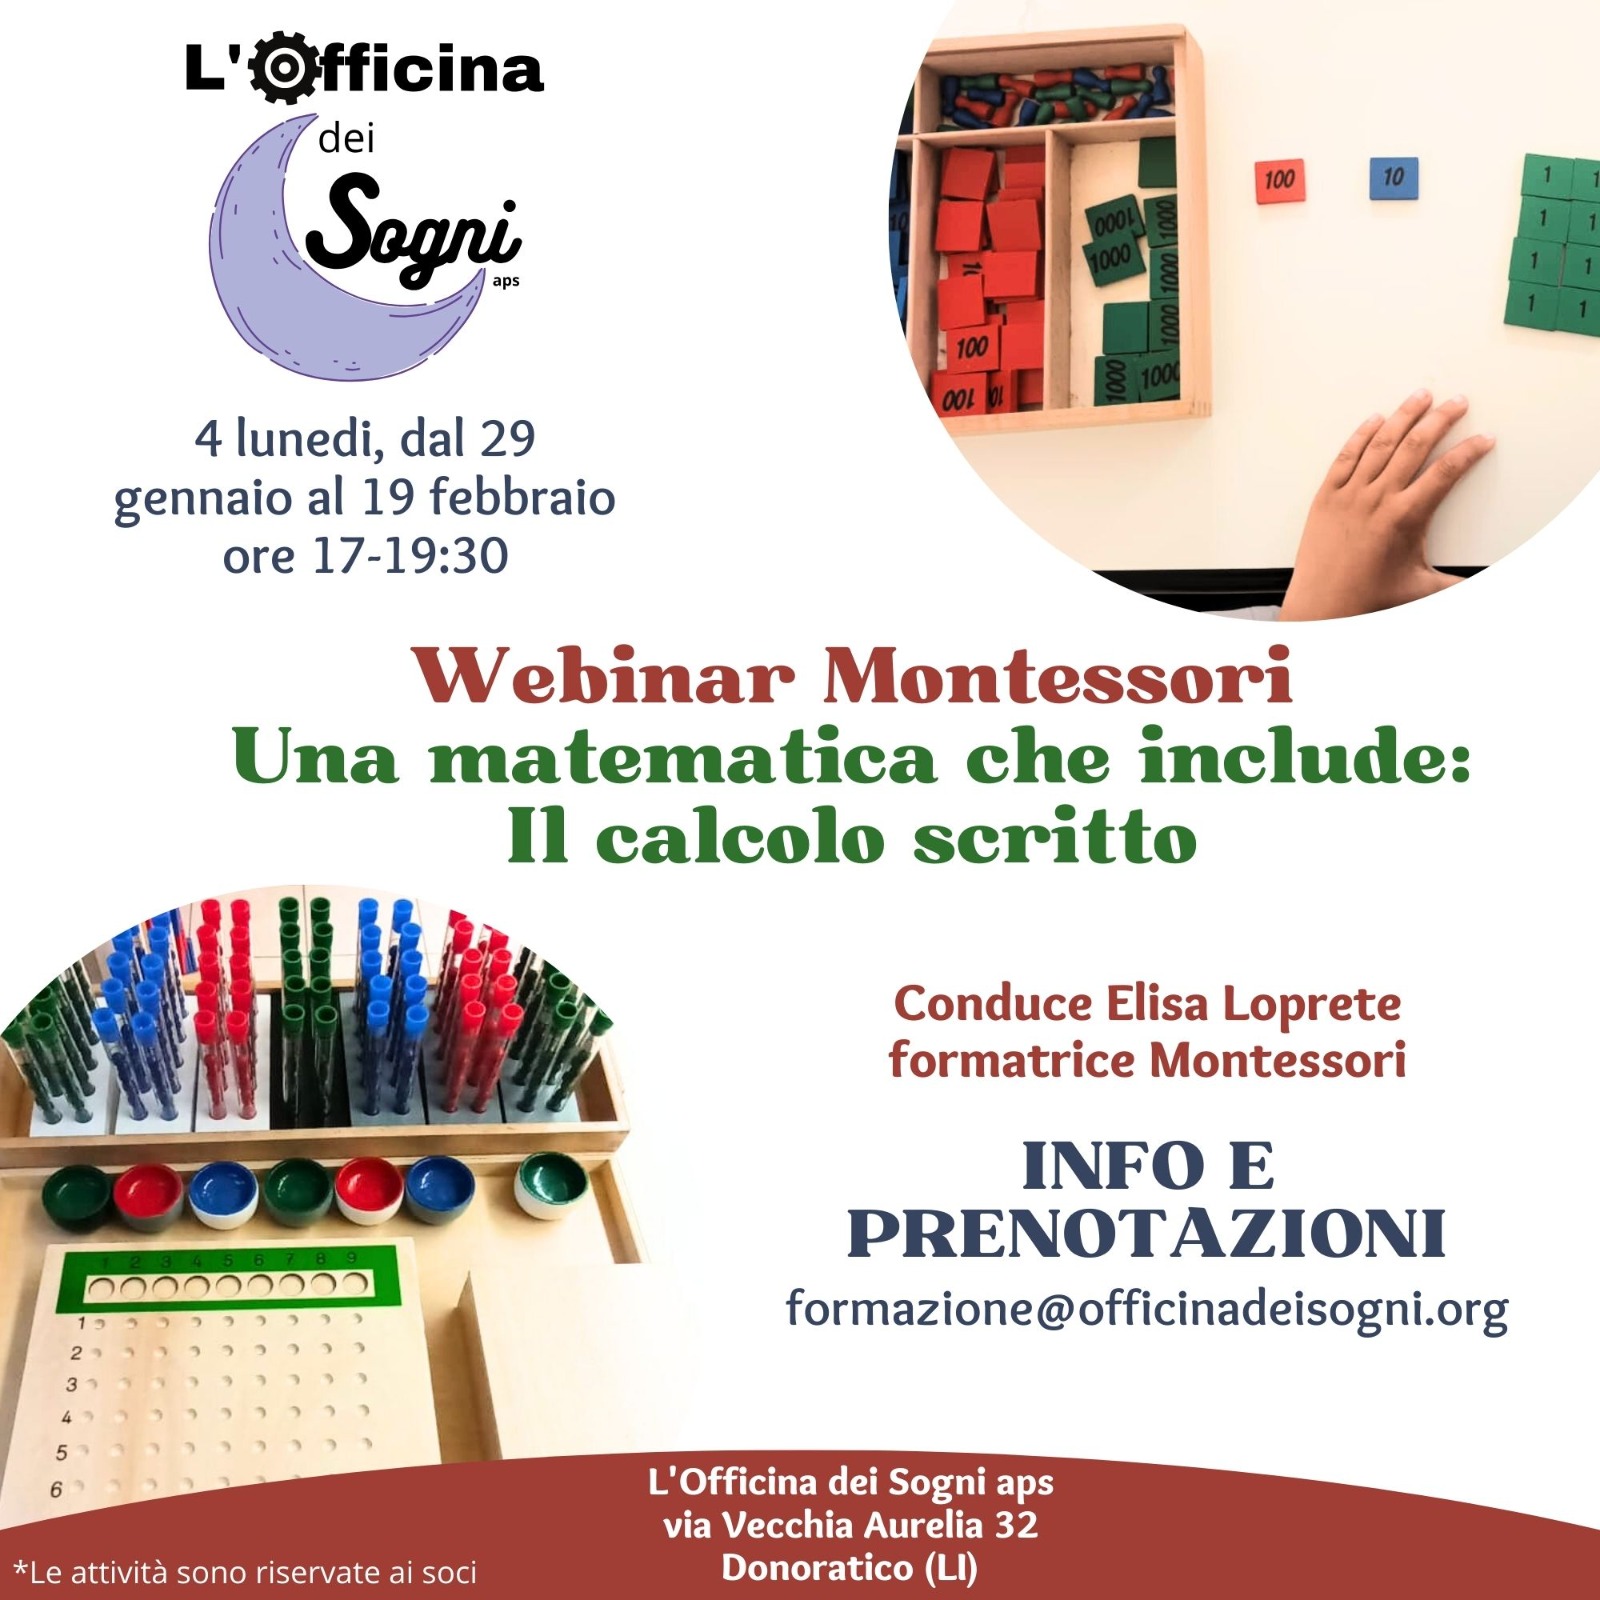 In partenza Webinar Montessori "Il calcolo scritto"